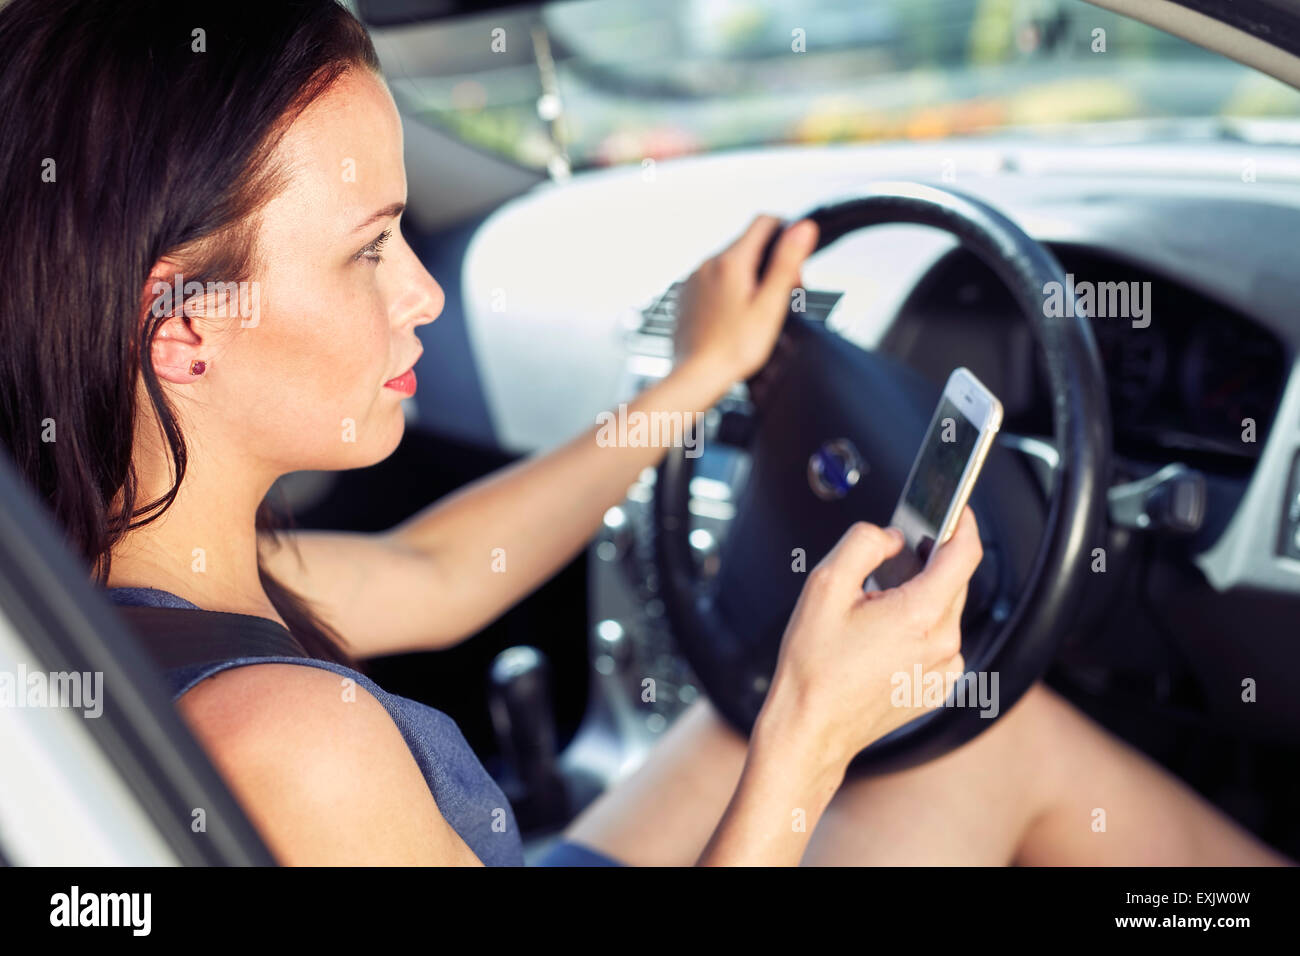 Mujer con teléfono móvil durante la conducción Foto de stock